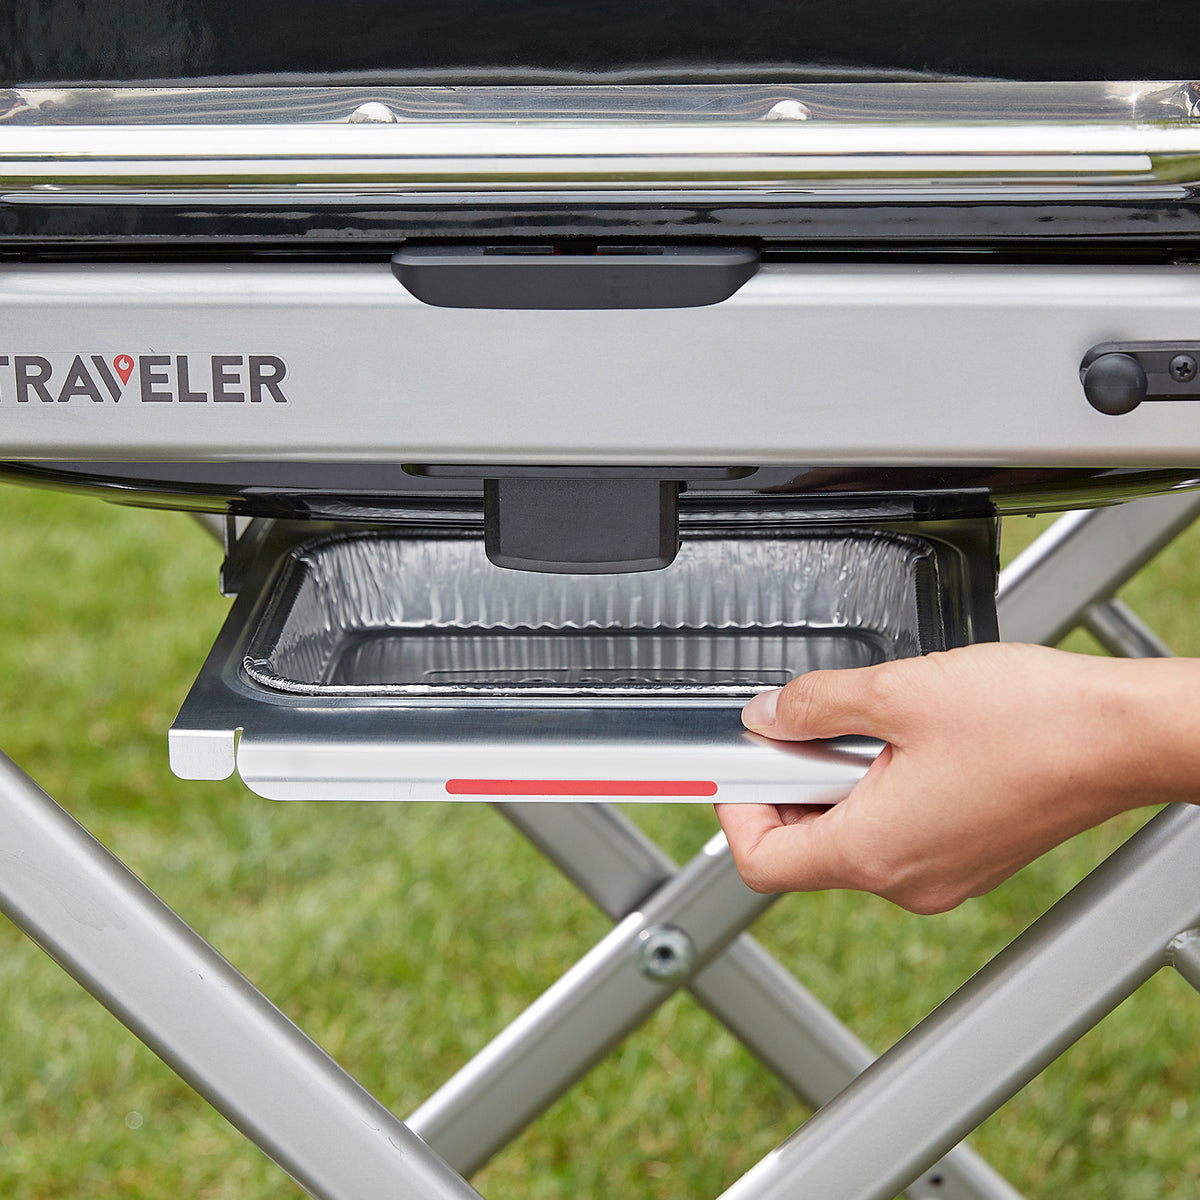 Weber Traveler® Portable Gas Grill